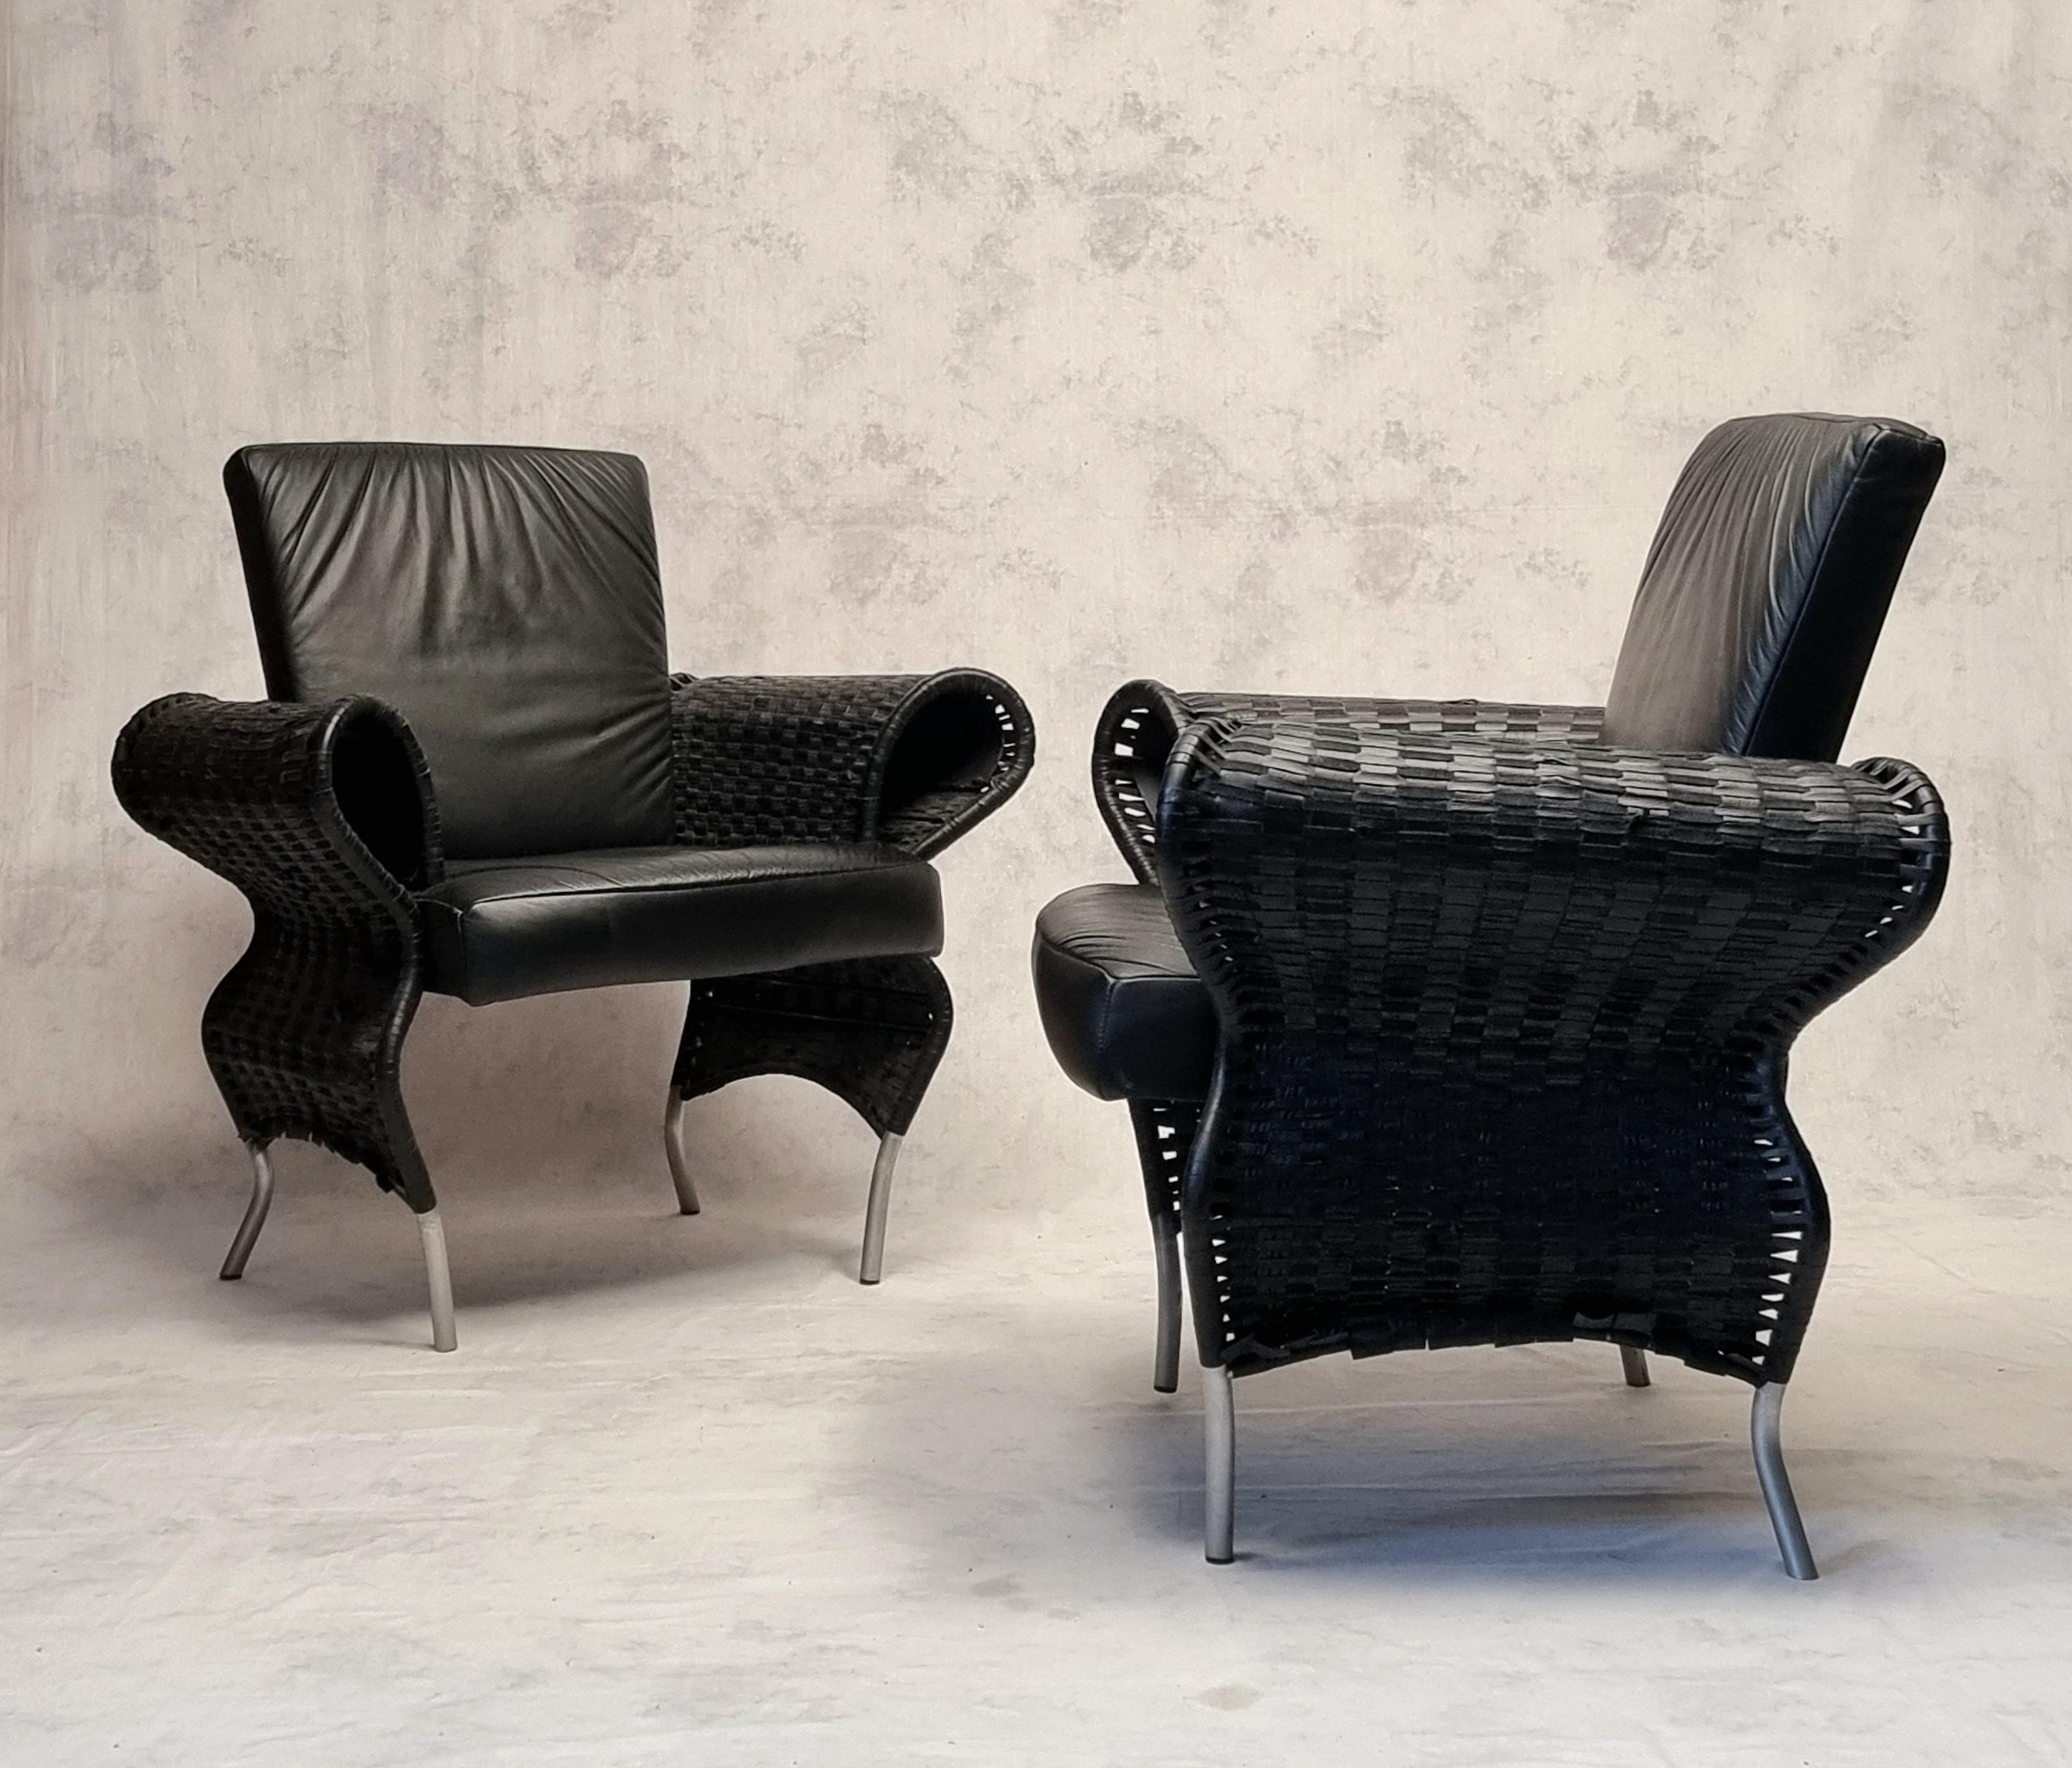 Überraschendes Sesselpaar des tschechischen Designers und Architekten Borek Sipek. Borek Sipek gilt als der Vater des Neobarocks. Er überflutet die Welt mit seinen Kreationen mit überraschenden Kurven und exzentrischen Designs. Von Möbeln über